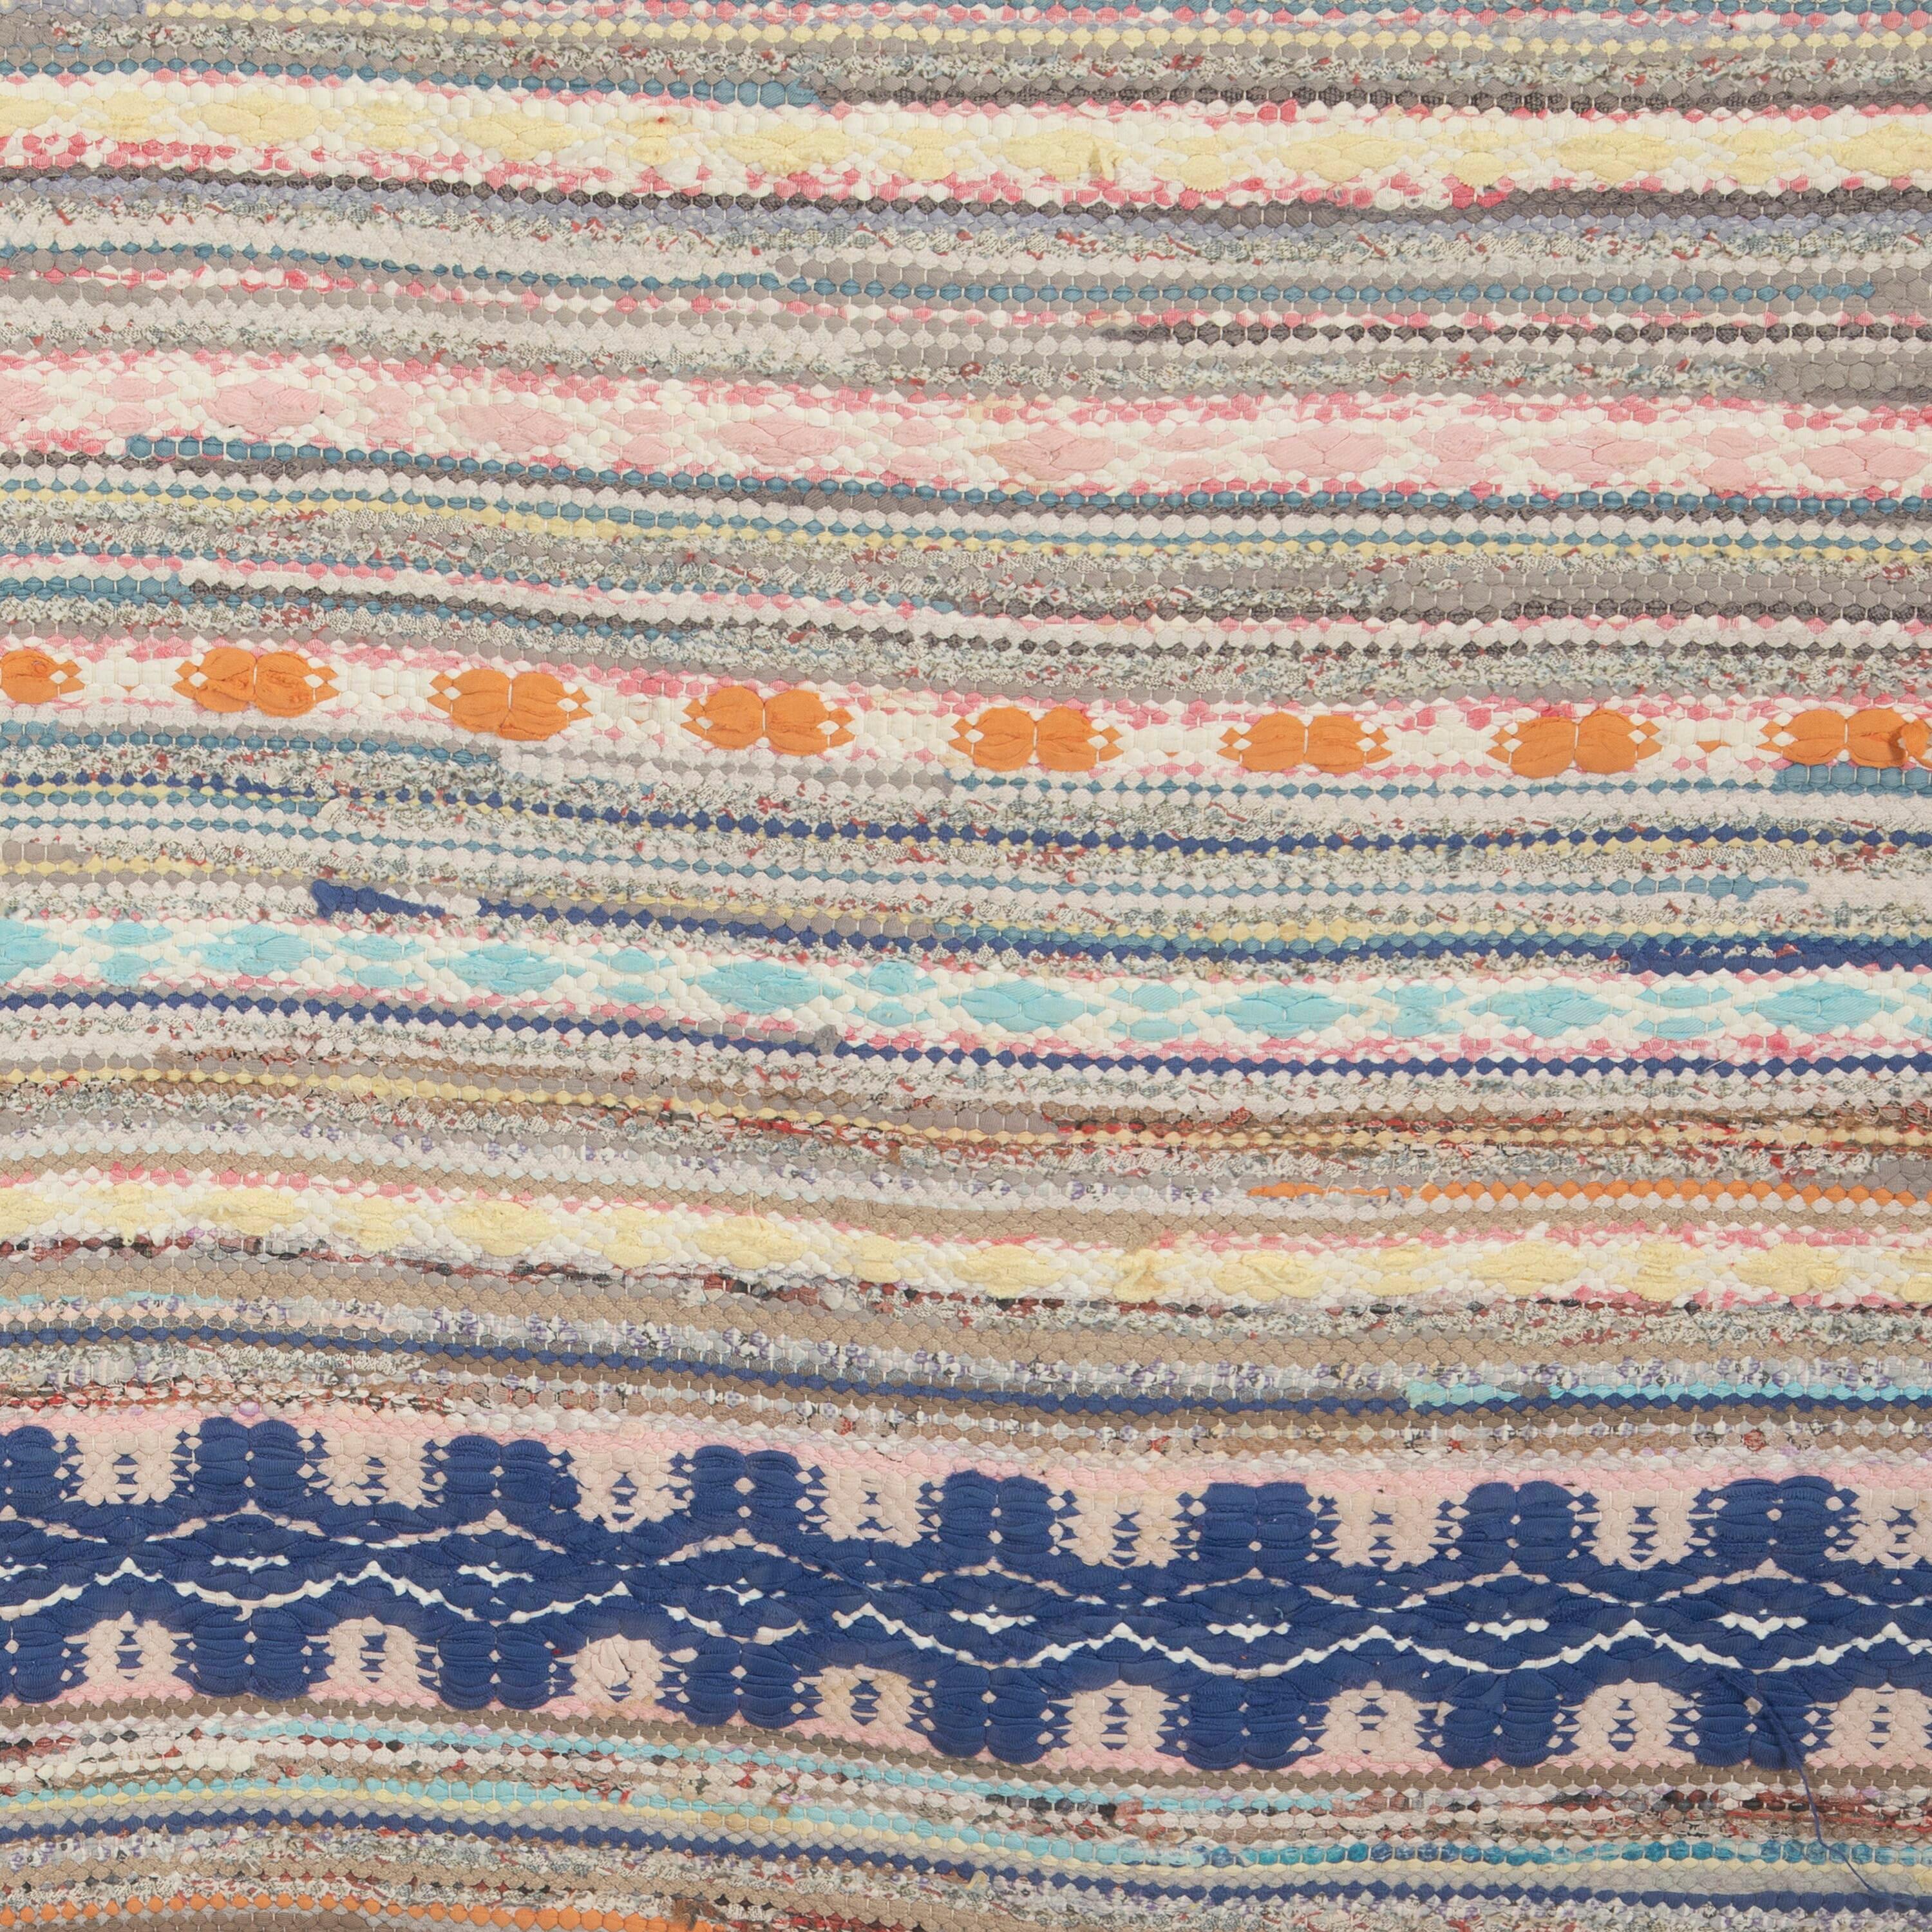 Traditioneller schwedischer Flickenteppich aus dem 20. Jahrhundert in Blau-, Creme- und Rosttönen, mit mehreren Mustern. 
Dieser Teppich hat lange Proportionen, ideal für den Einsatz in einem Flur oder Korridor. Es weist ein dichtes Muster in einer